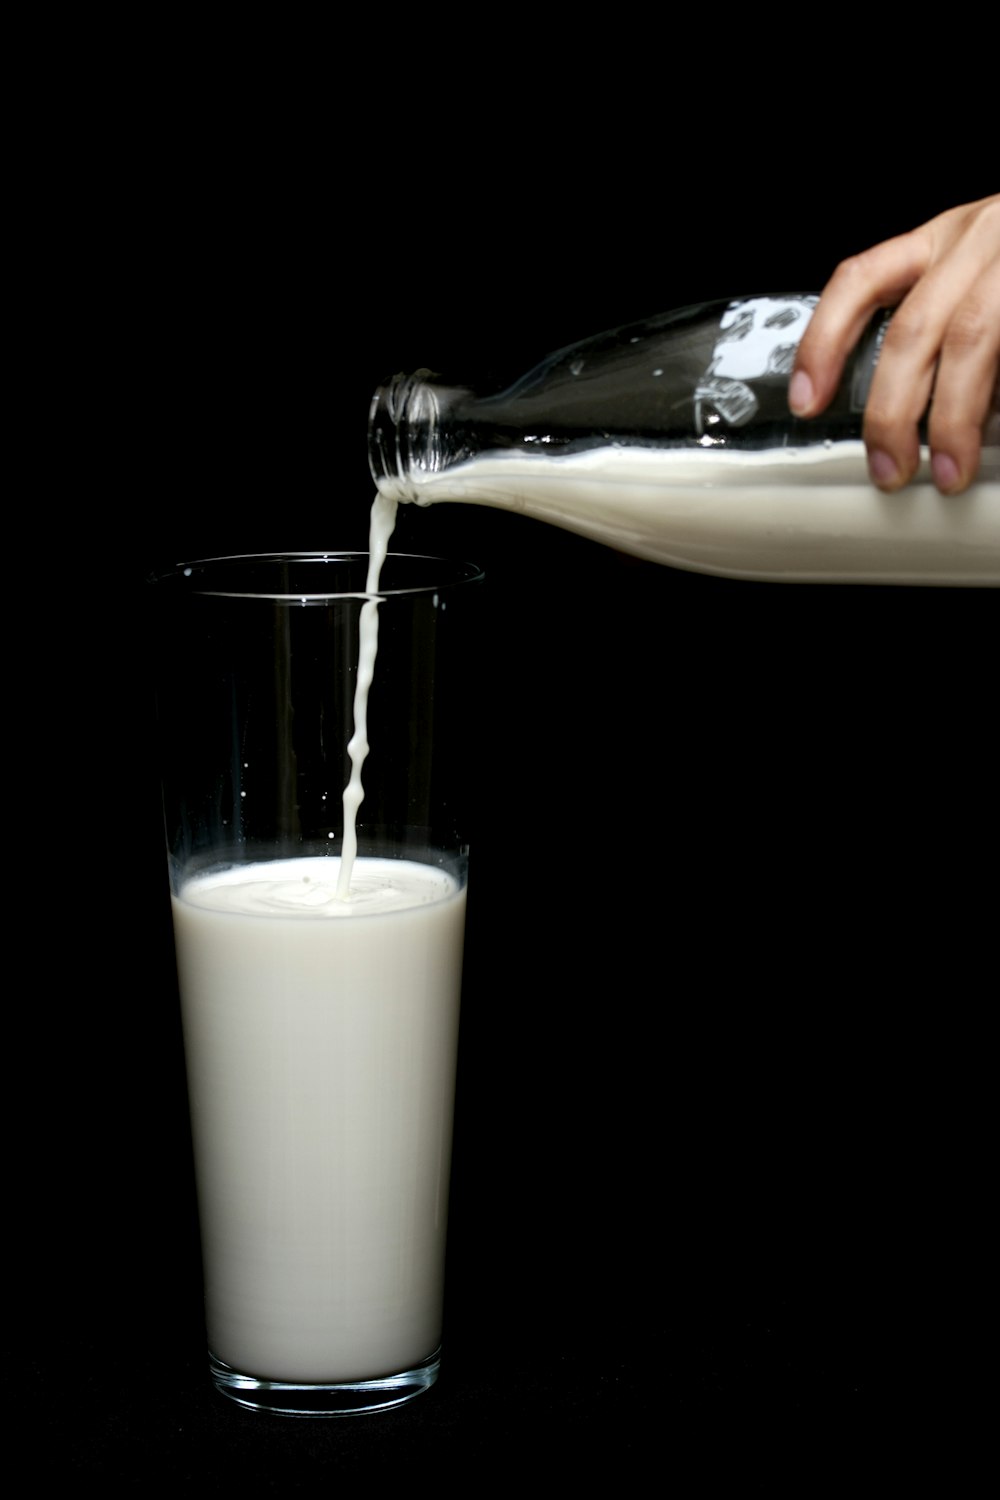 pessoa derramando leite em copo transparente